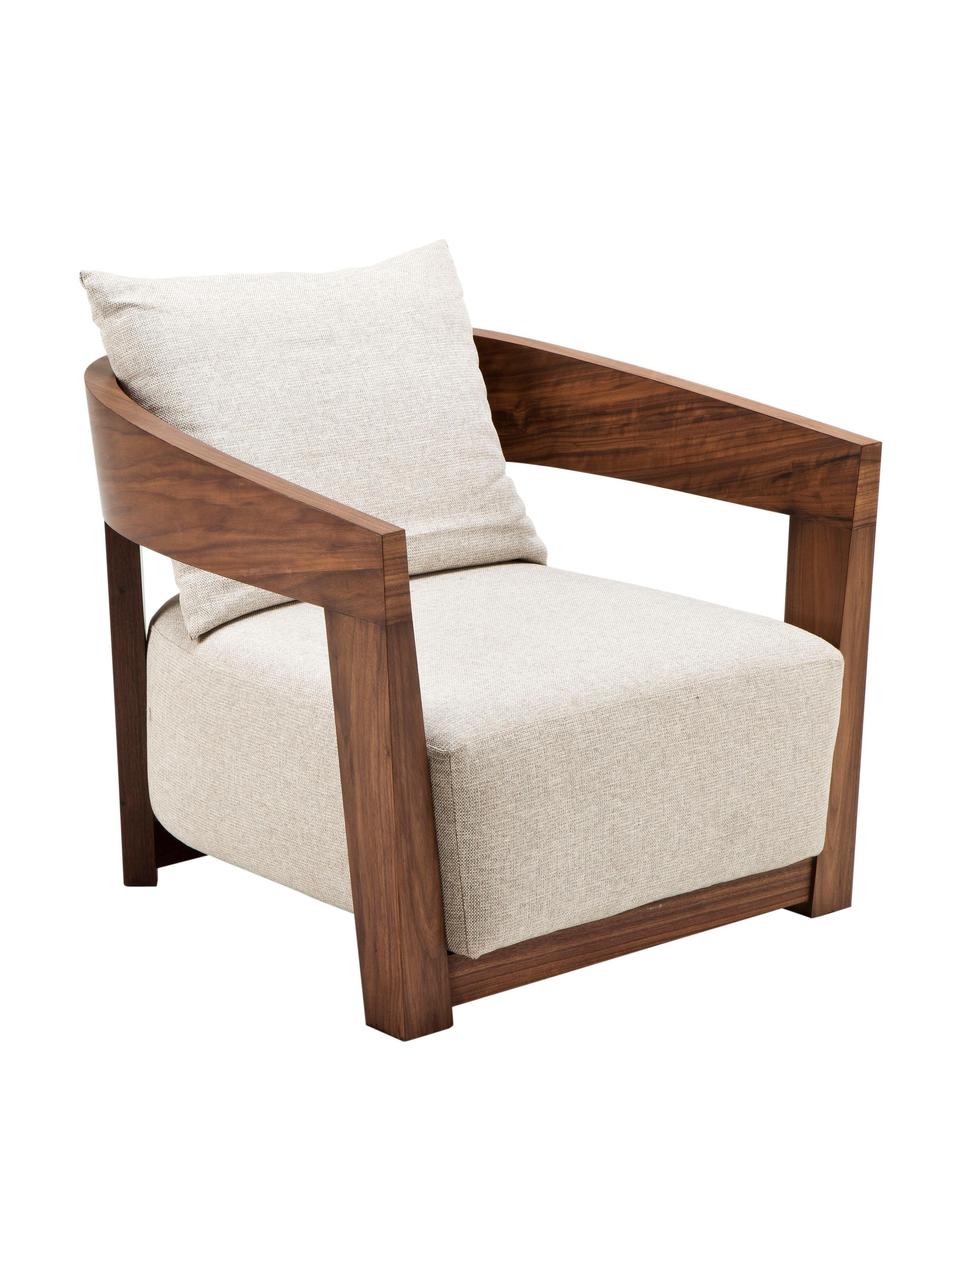 Fotel z drewna Rubautelli, Tapicerka: 58% poliester, 42% olefin, Stelaż: płyta pilśniowa średniej , Beżowa tkanina, S 74 x G 80 cm